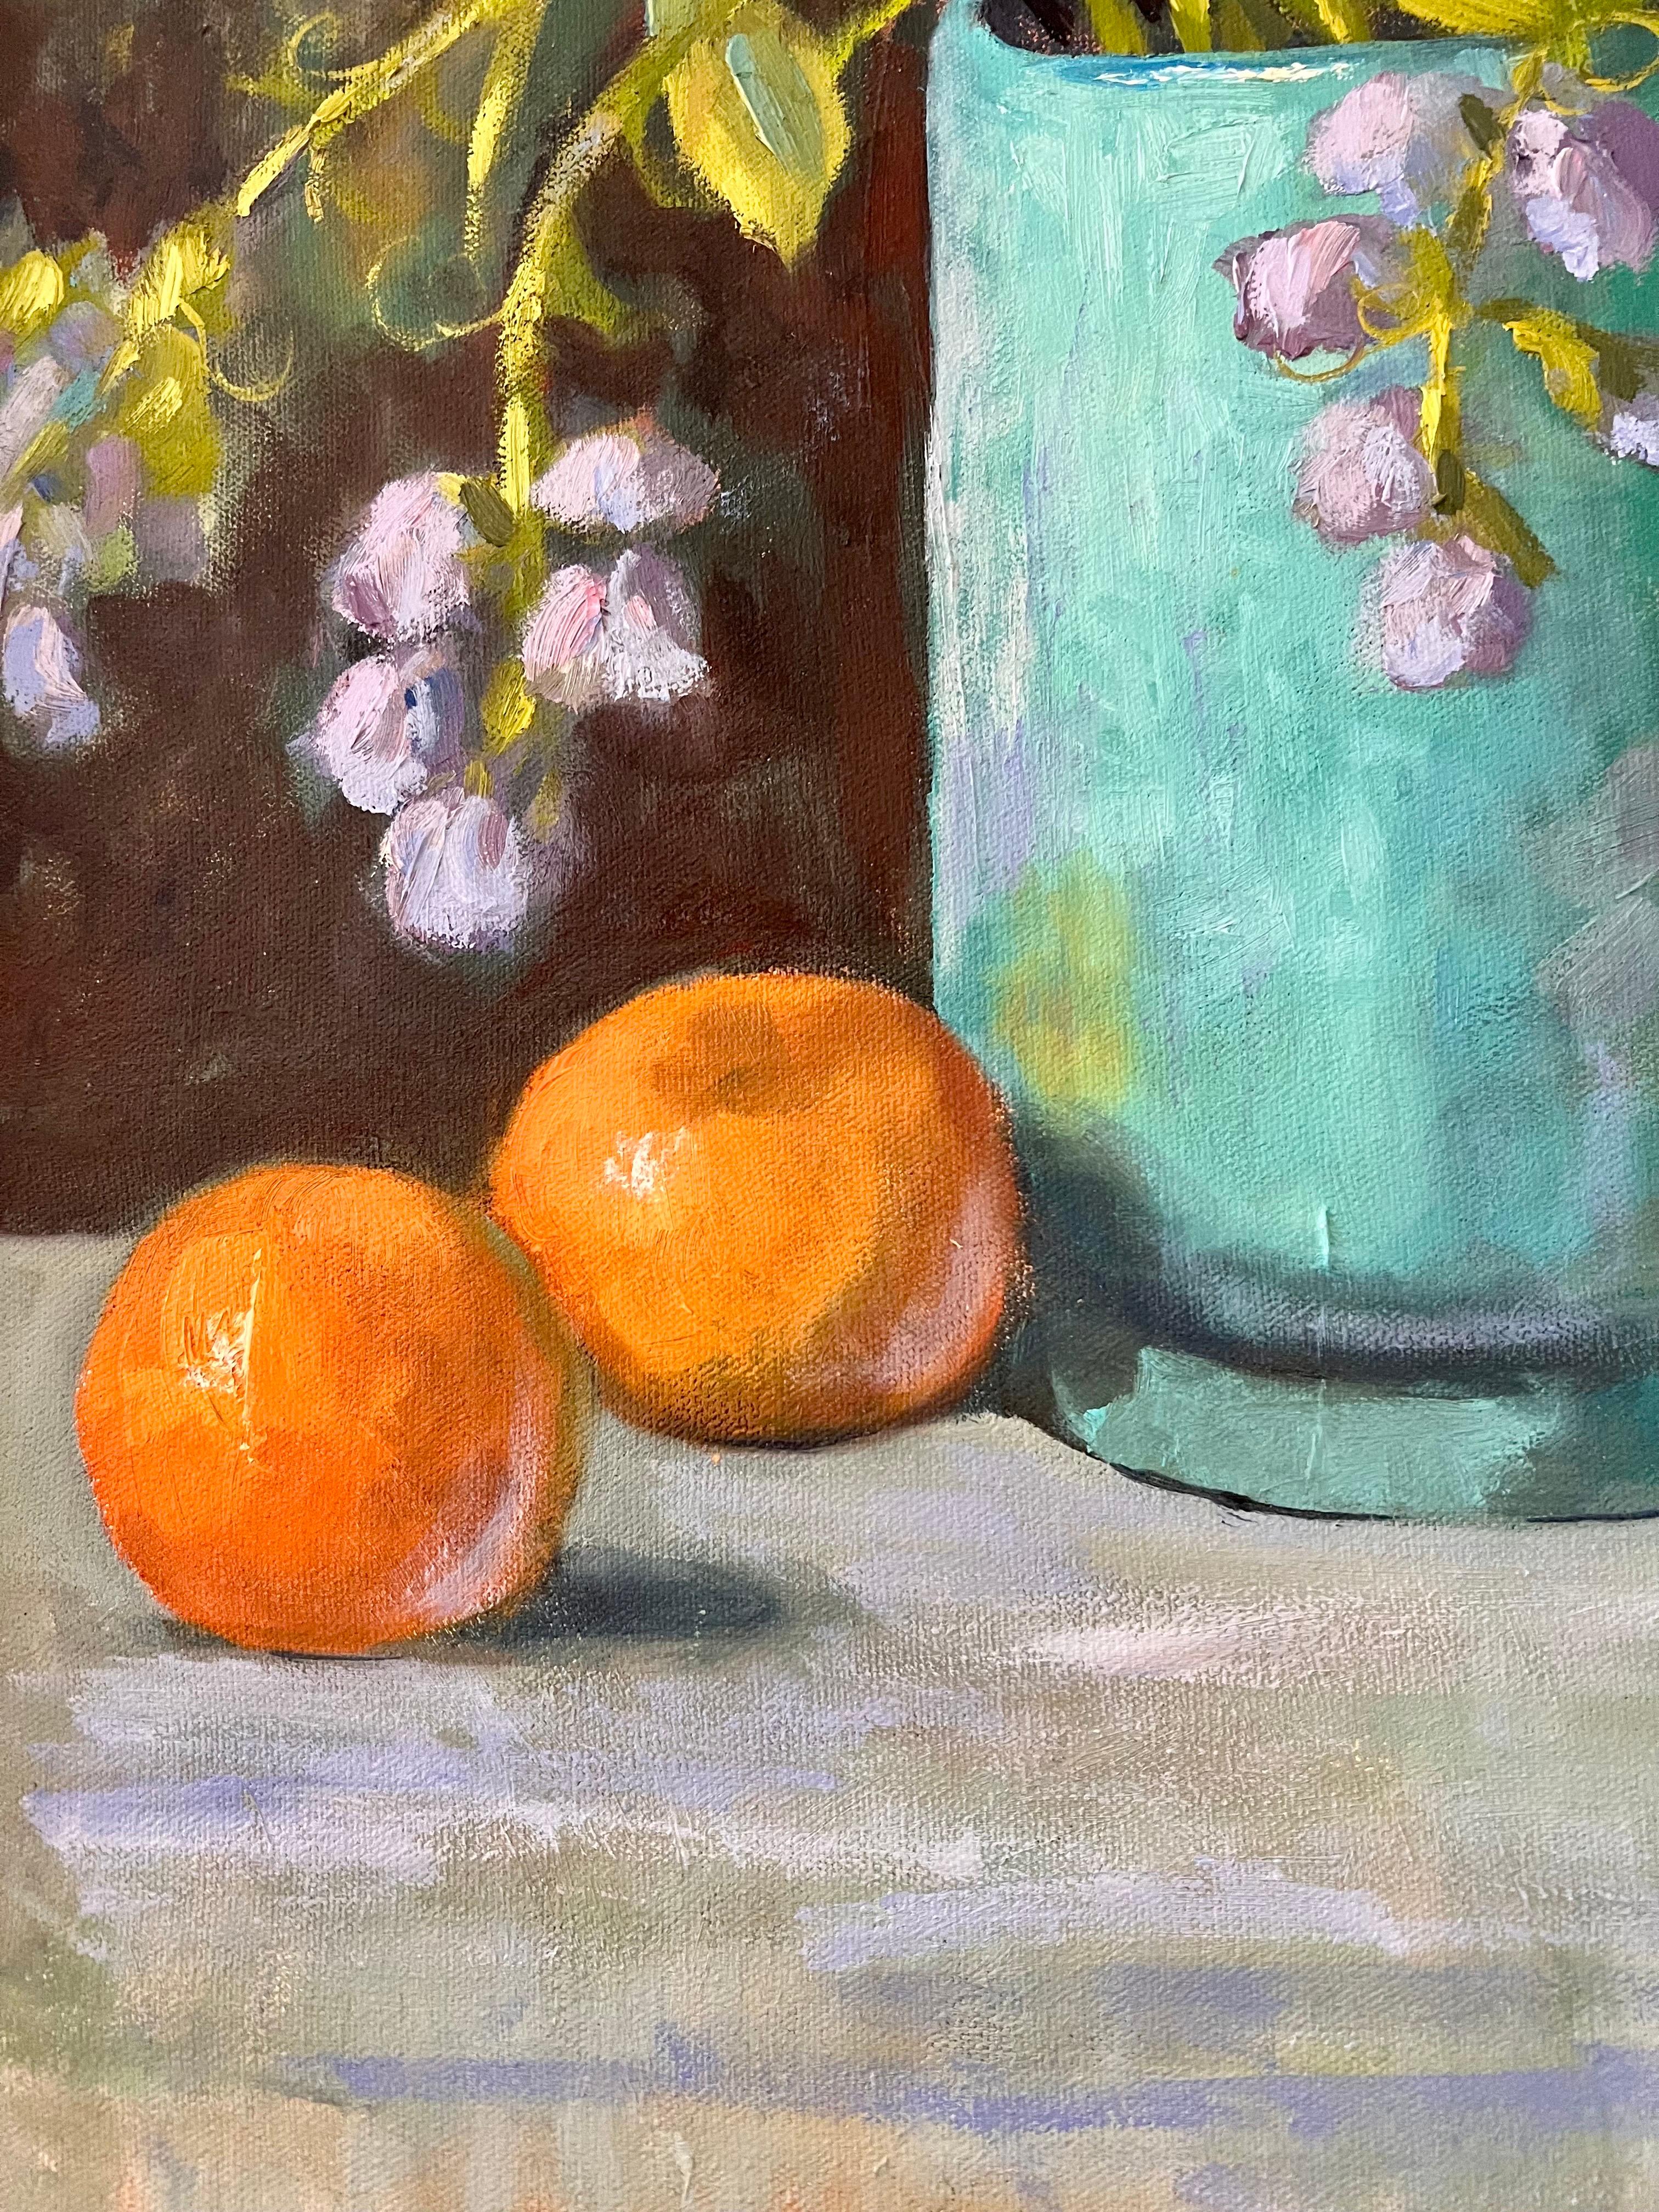 Nature morte de l'artiste américaine Carol Reeve, bien répertoriée, représentant des oranges et des fleurs.
Le médium est l'huile sur toile.  Signature de l'artiste au recto.